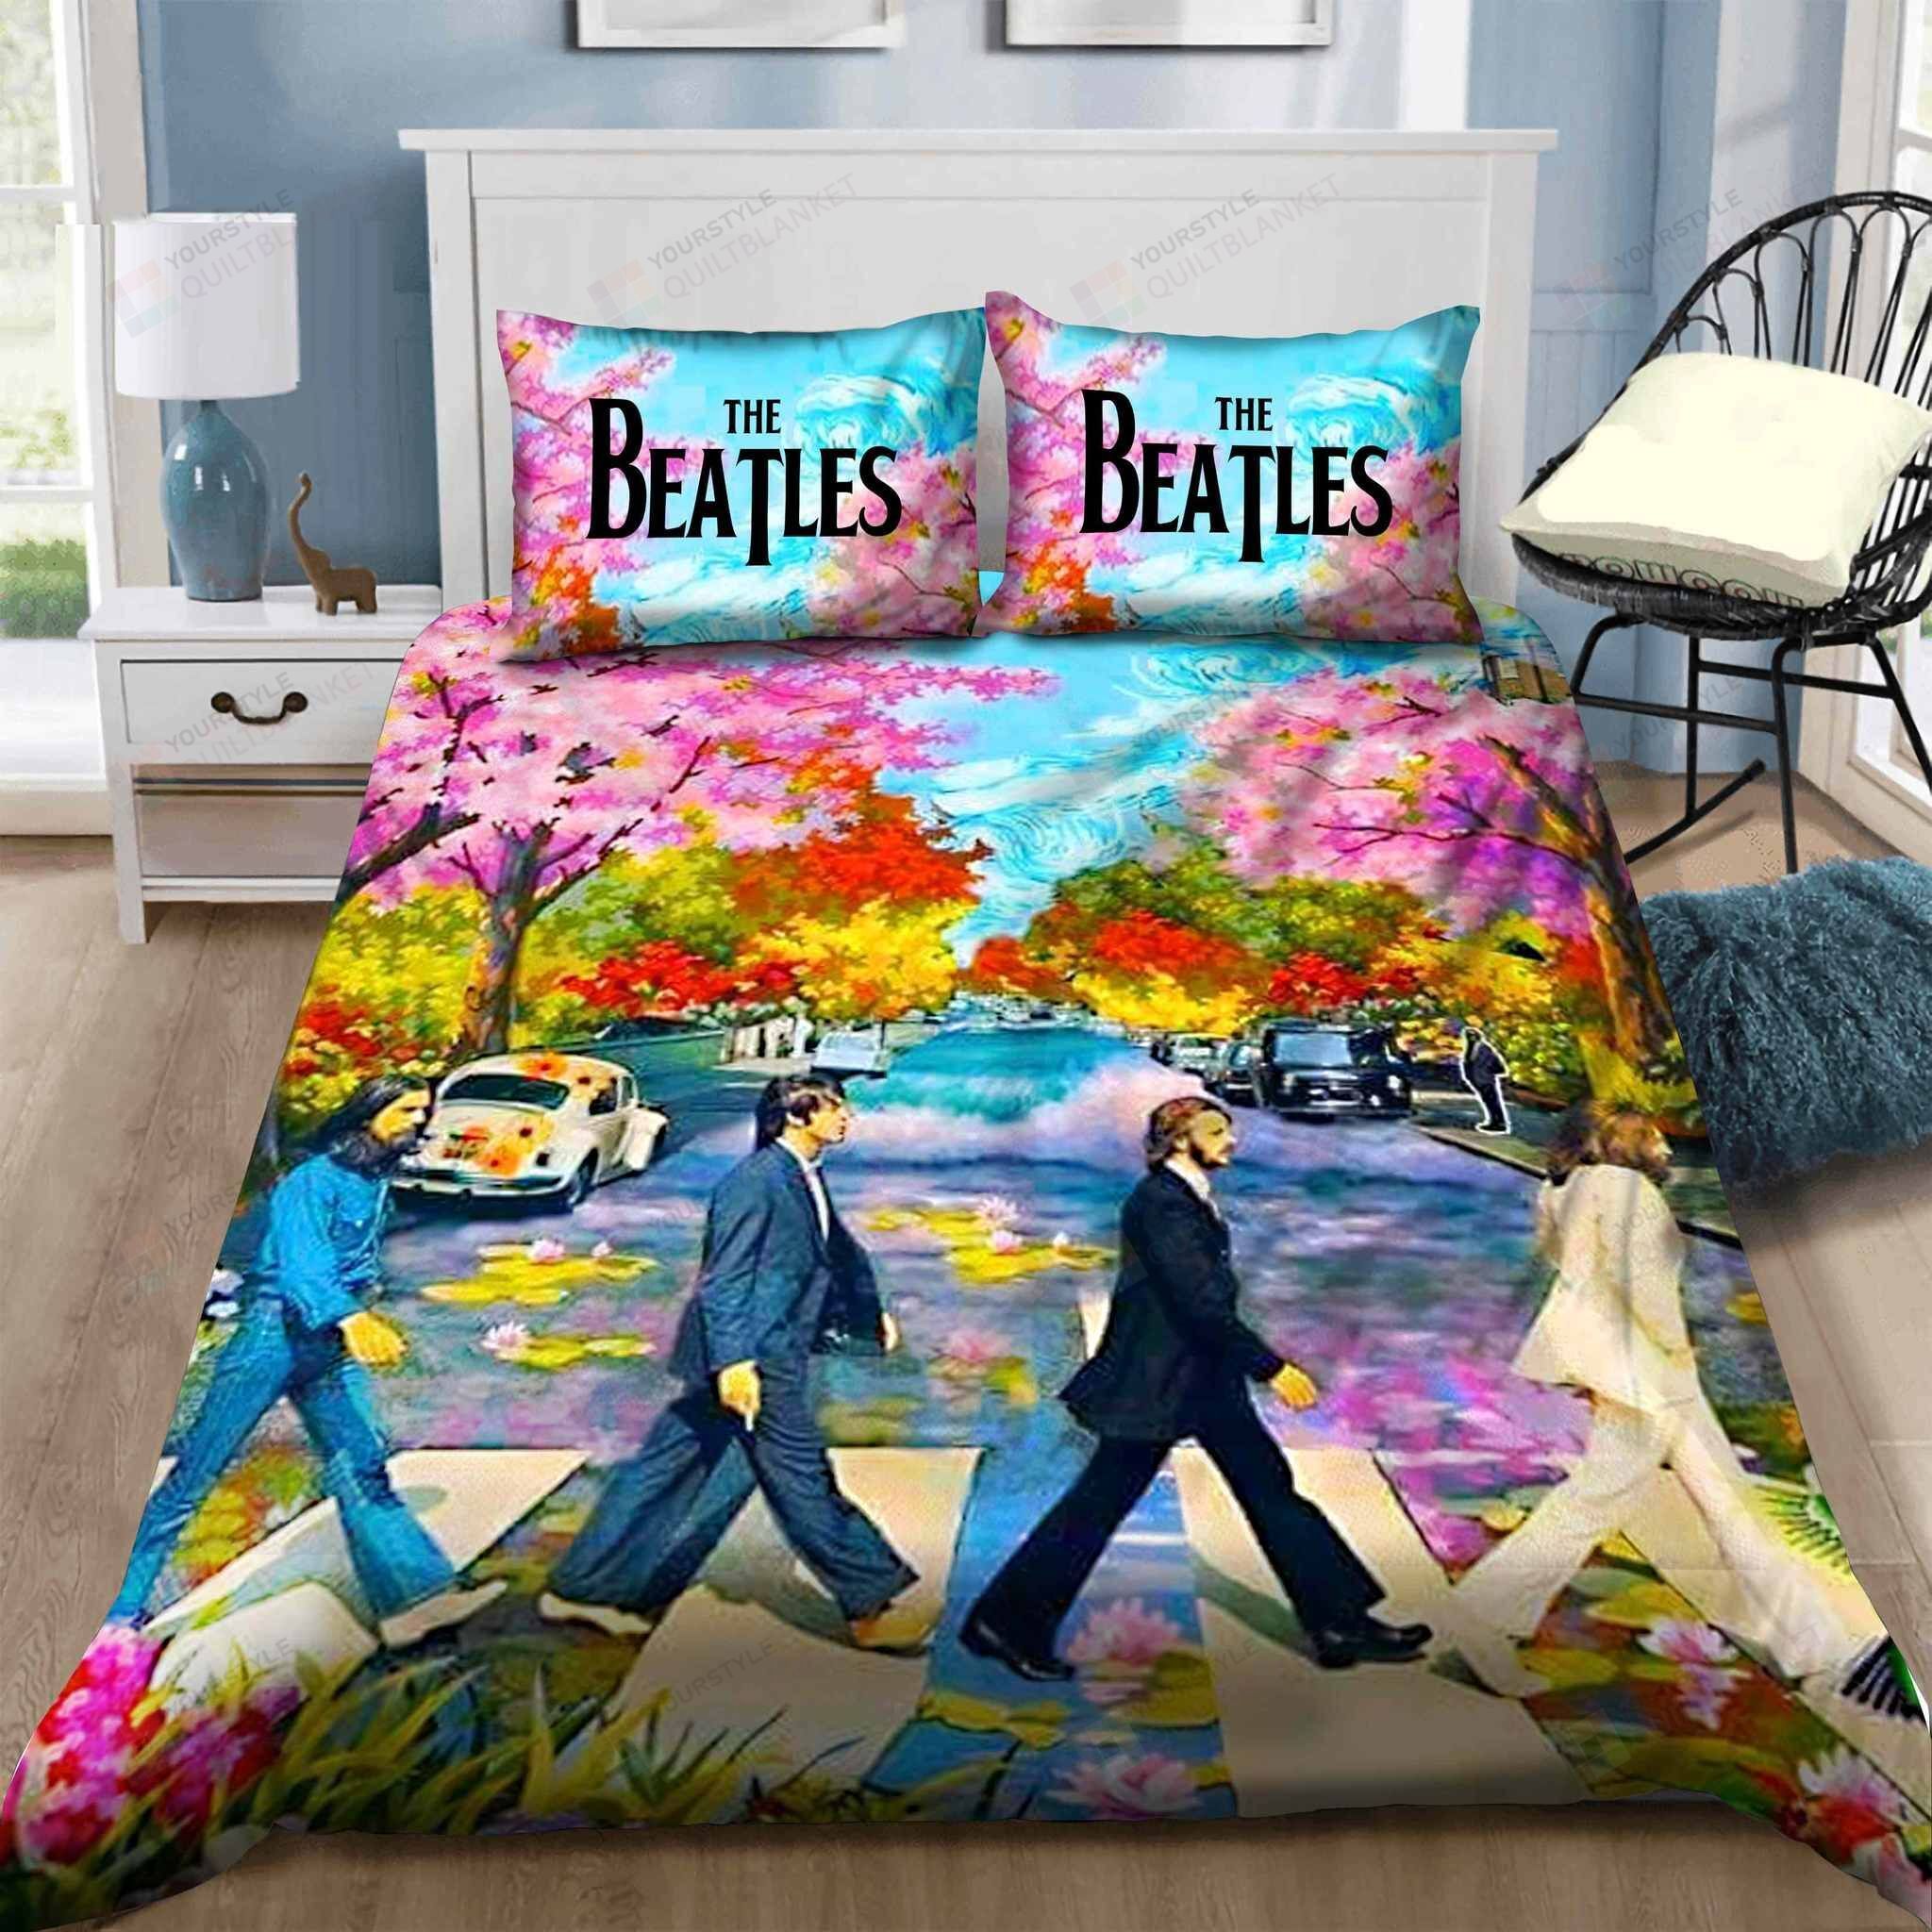 The Beatles Bedding Set Sleepy (Duvet Cover & Pillow Cases)